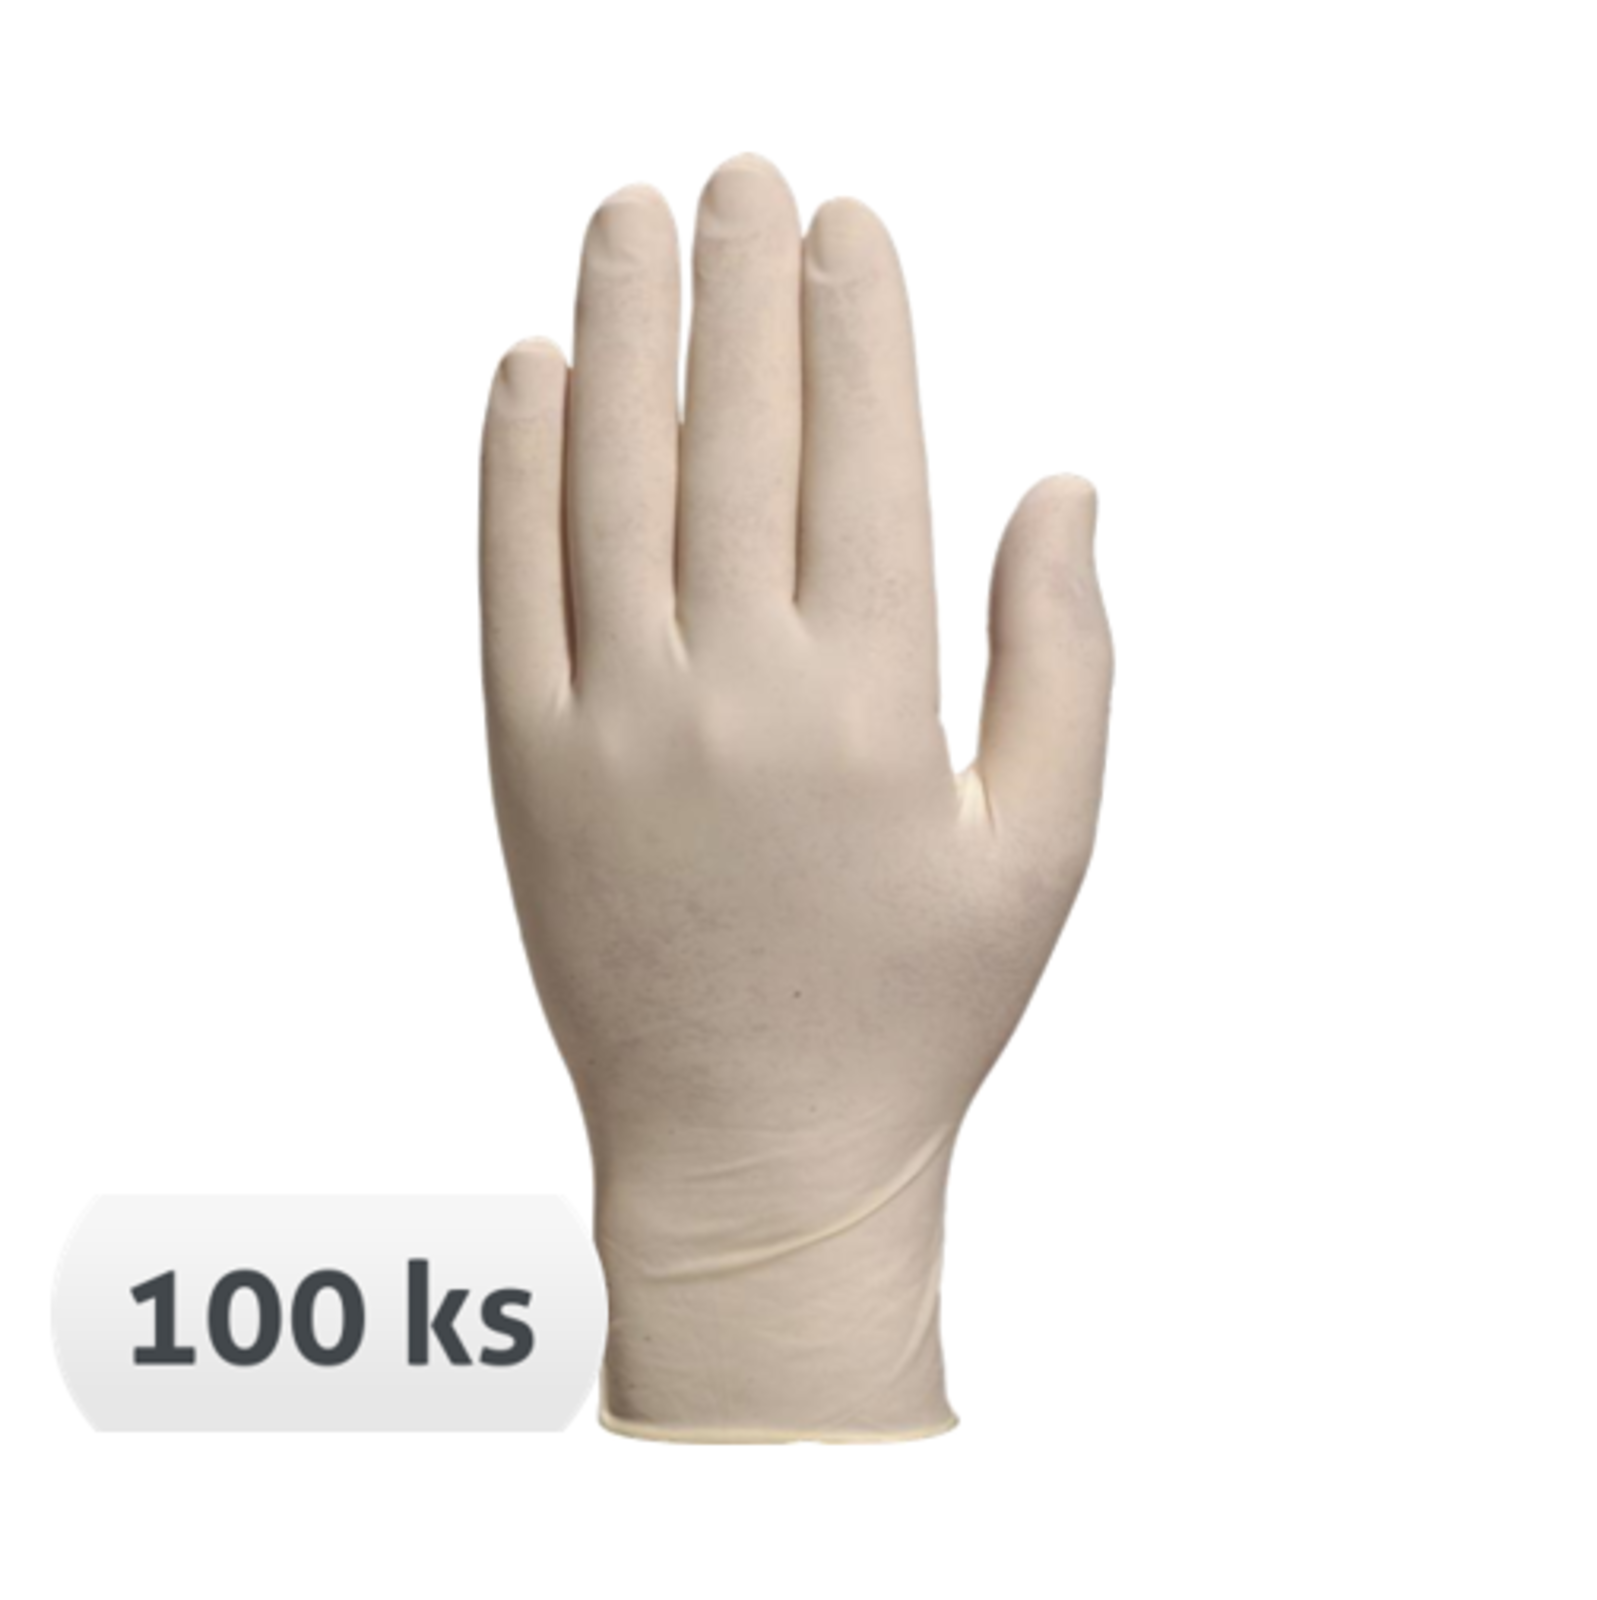 Jednorazové latexové rukavice Veniclean V1340 nepudrované 100 ks - veľkosť: 6/7